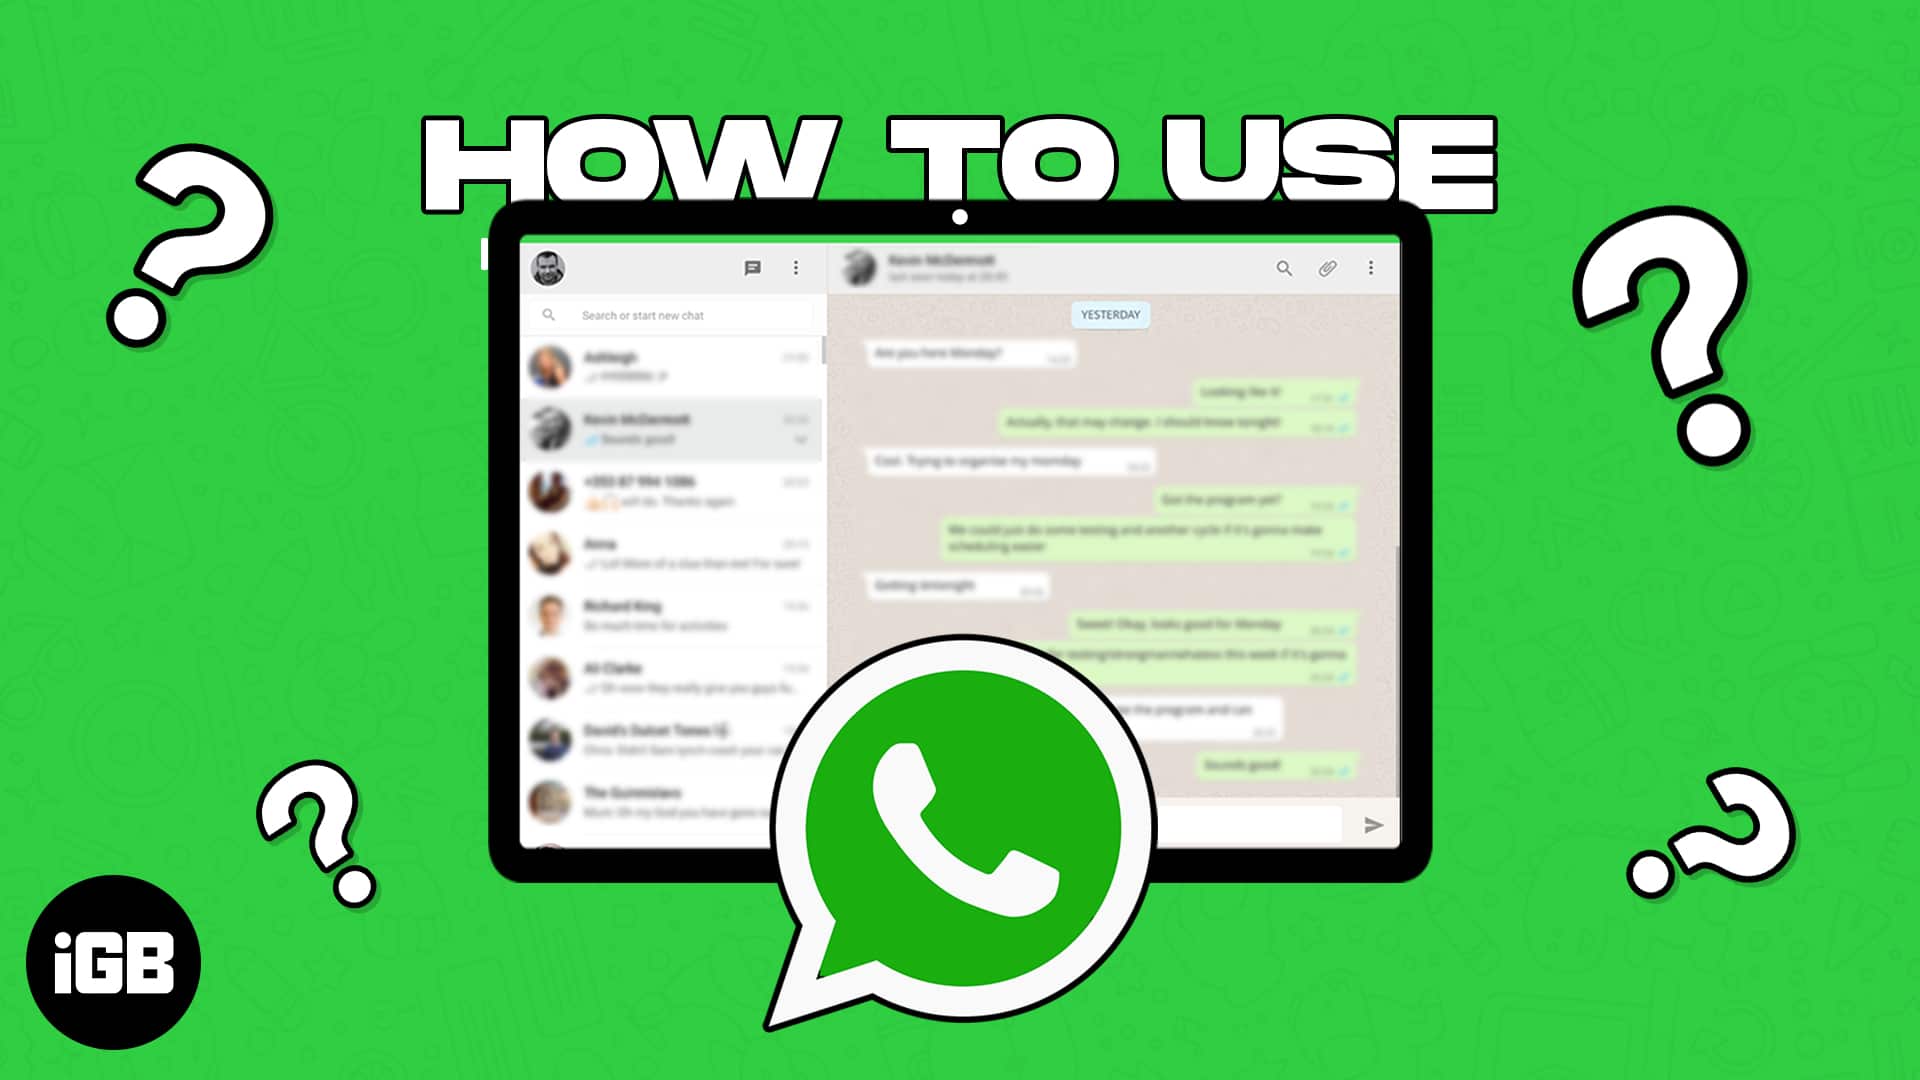 How to use whatsapp on ipad